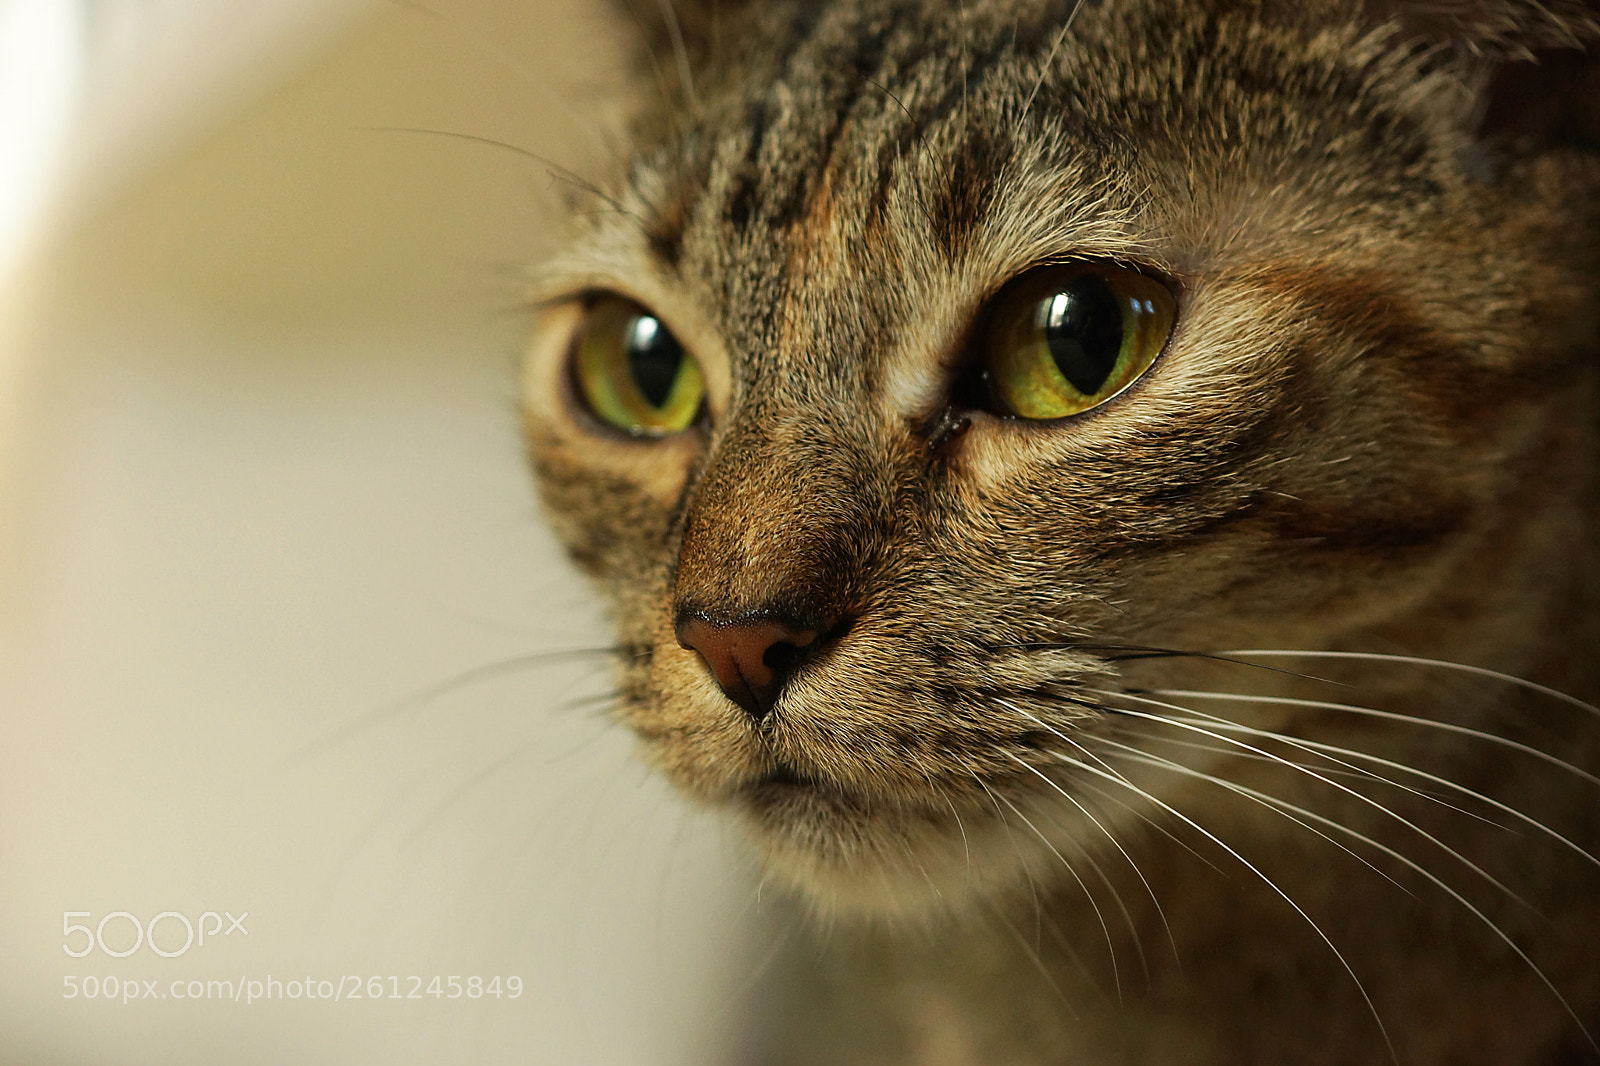 Sony SLT-A77 sample photo. Curious tabby cat close photography